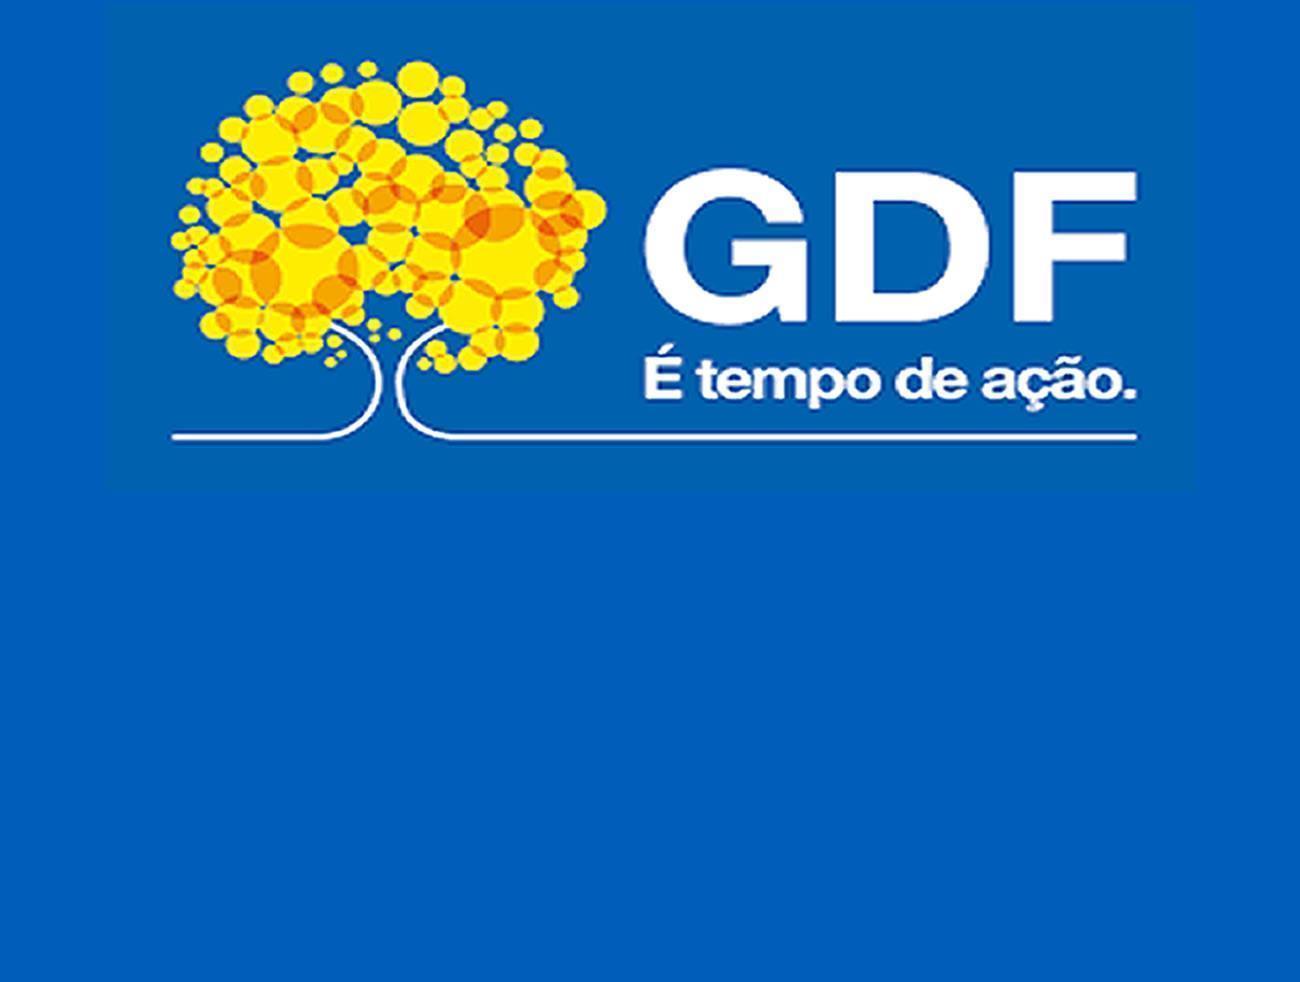 Sorteada a Subcomissão Técnica que vai avaliar proposta publicitária do GDF